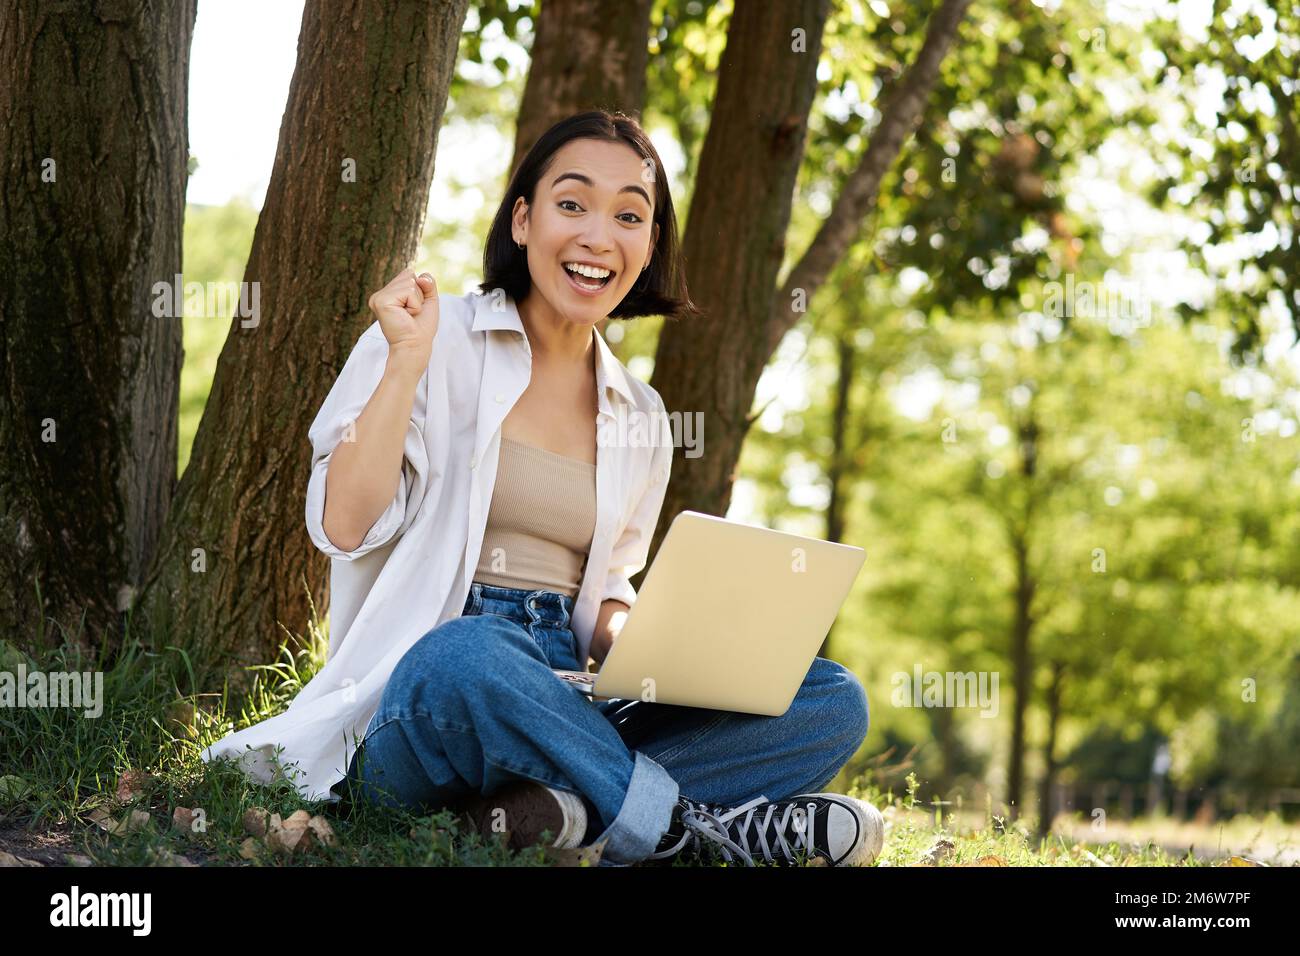 Enthusiastisches junges asiatisches Mädchen, das mit einem Laptop neben einem Baum im grünen, sonnigen Park sitzt, feiert, triumphiert und lächelt Stockfoto